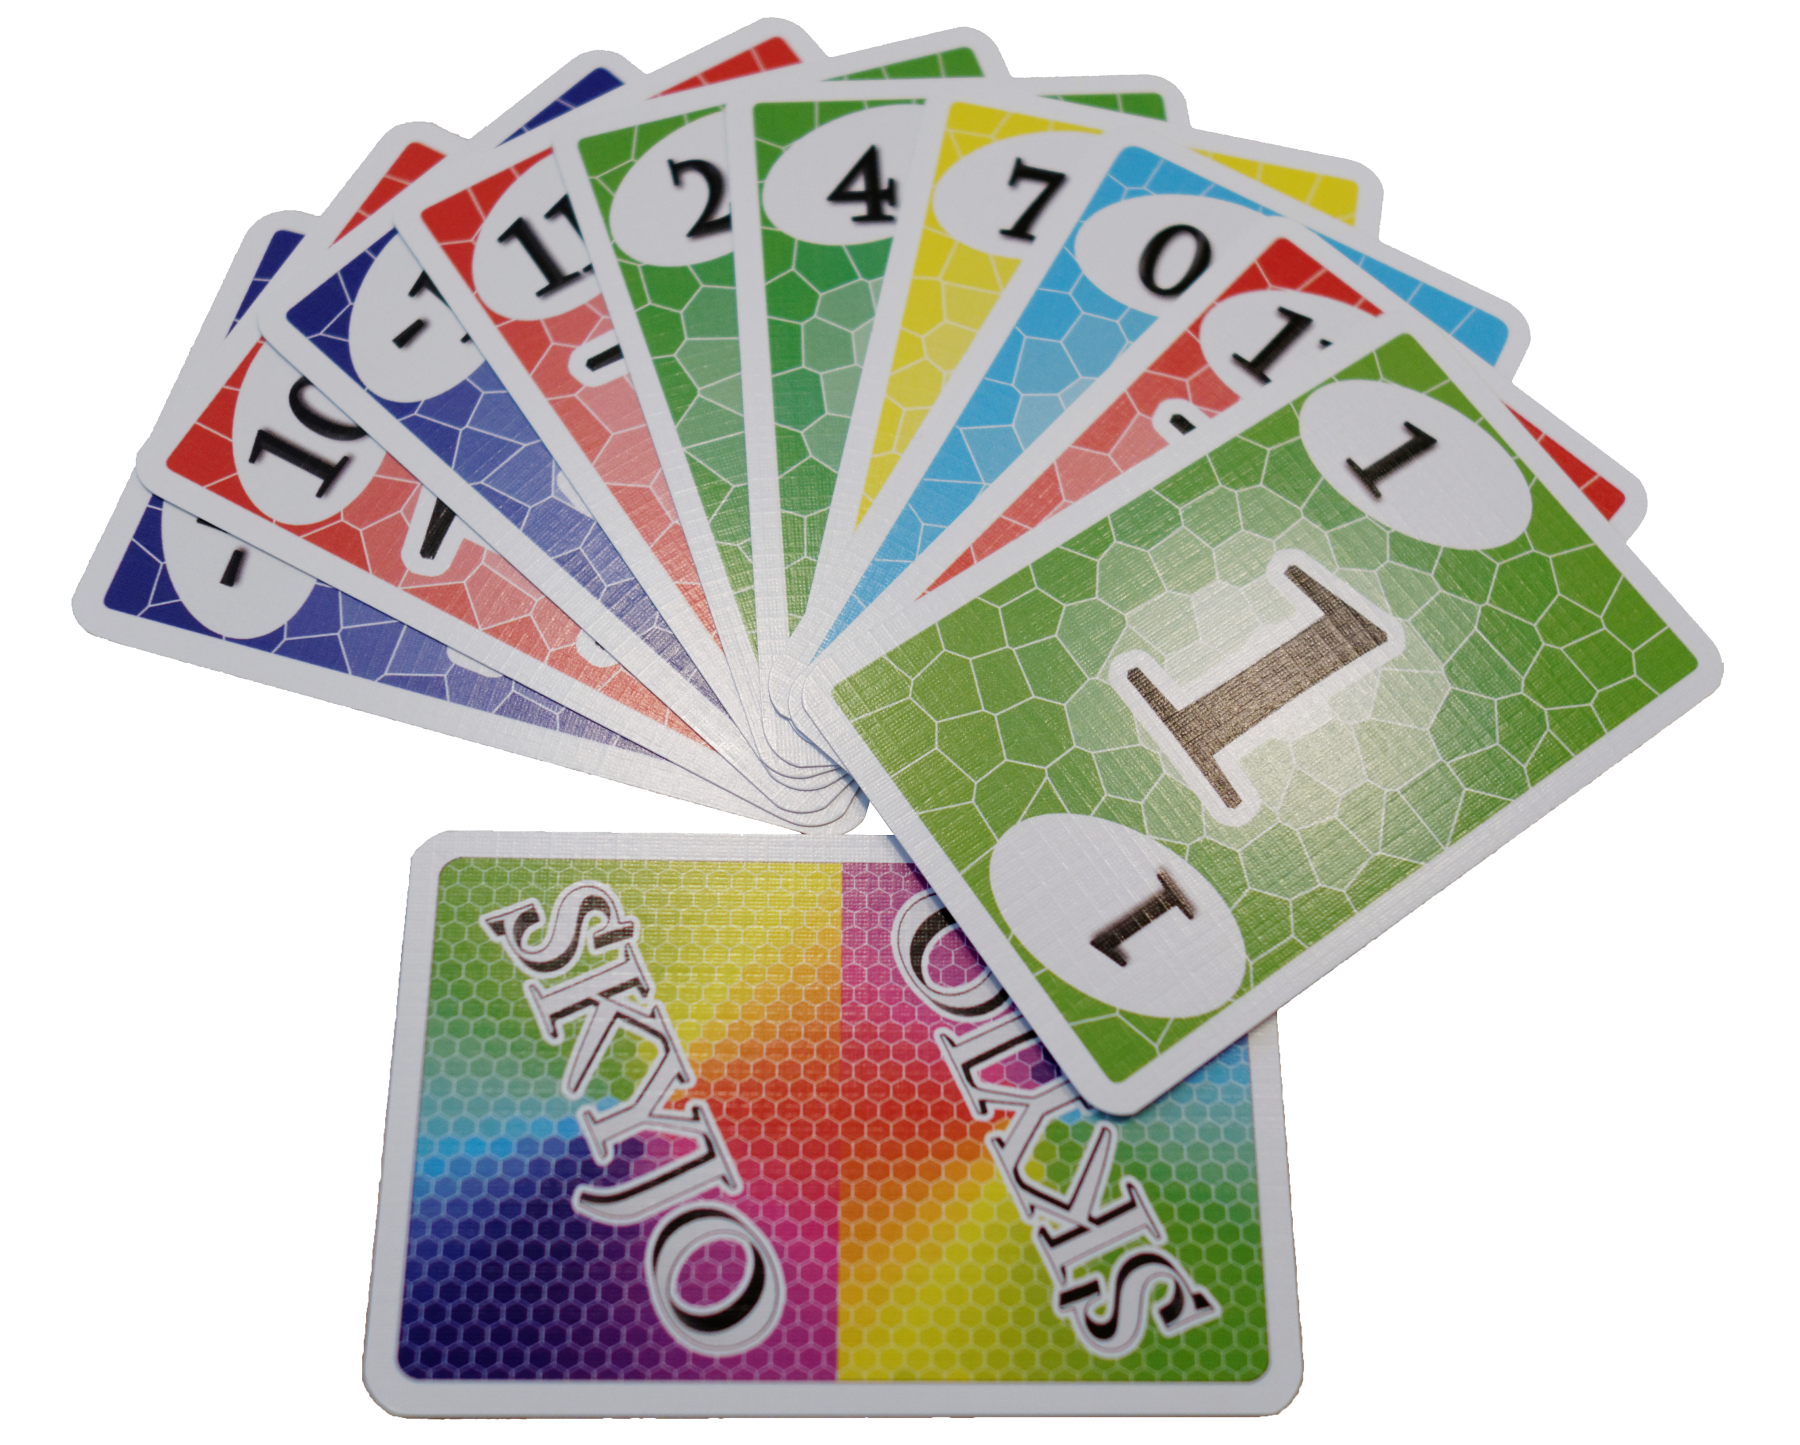 Rocco giocattoli - skyjo - gioco di carte - strategia e divertimento - gioco da tavolo per tutta la famiglia 8+ - 